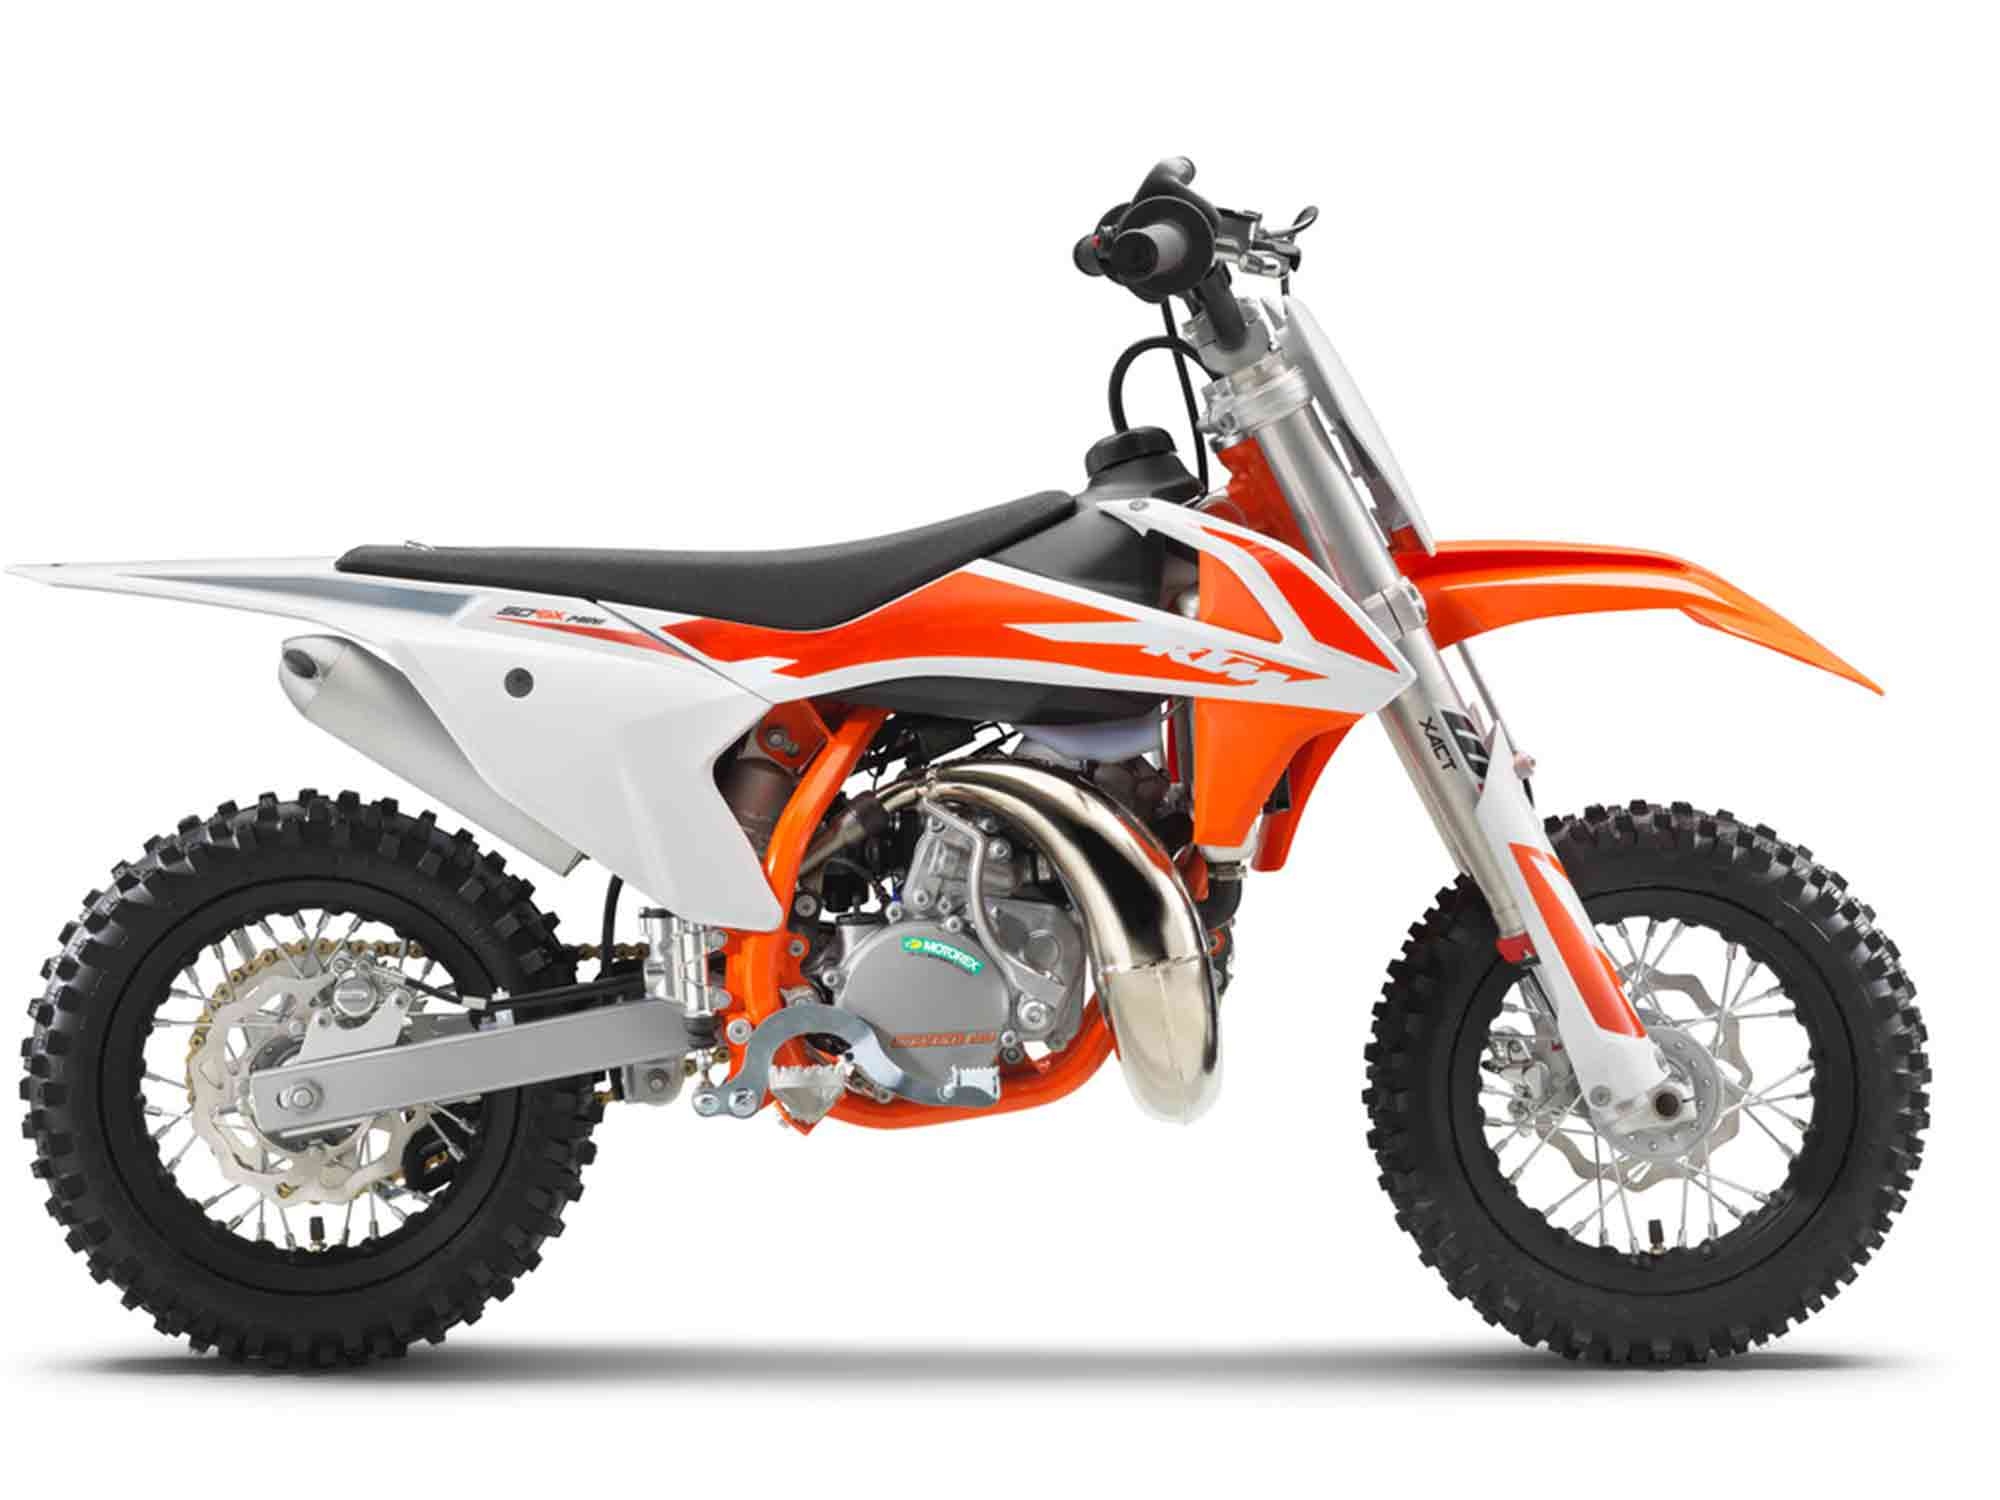 KTM 50 SX, Dirt bikes, Adventure bikes, Off-road, 2000x1500 HD Desktop